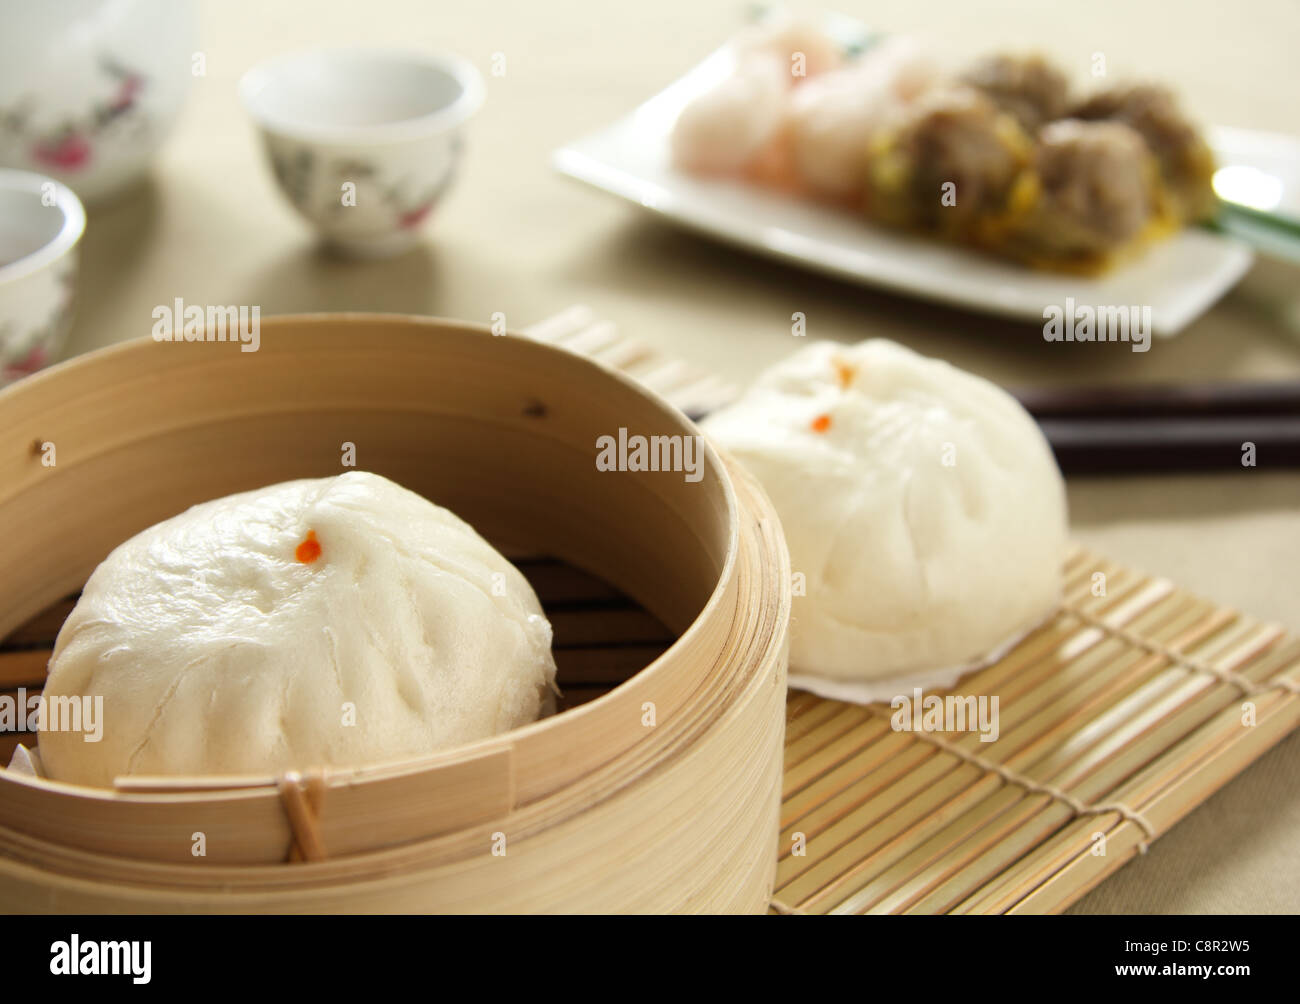 Chinese food, Dimsum Stock Photo